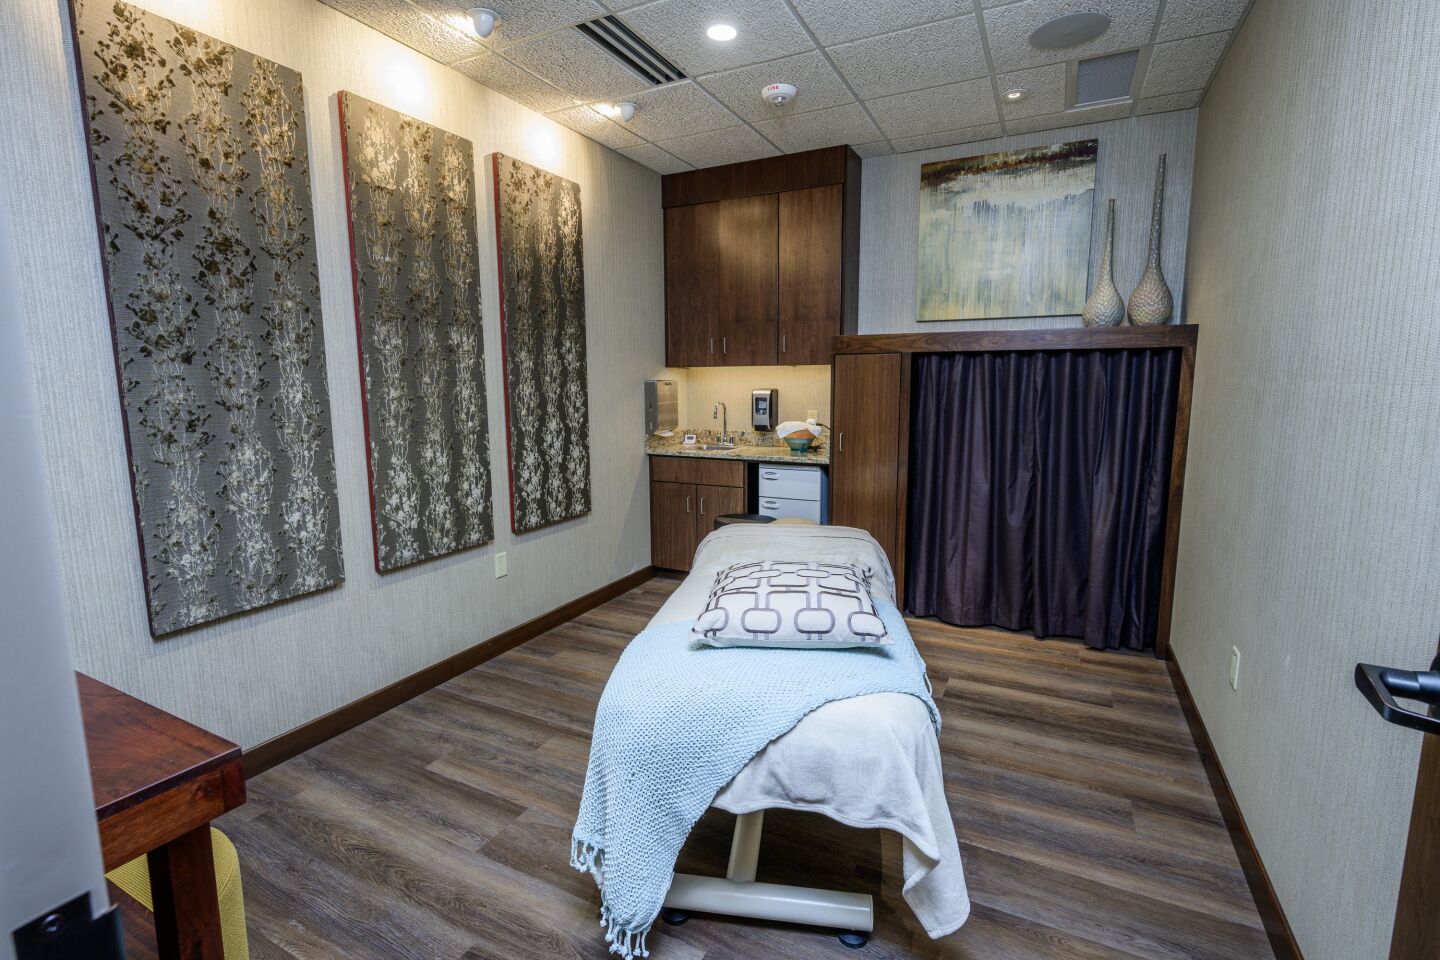 A private massage room.